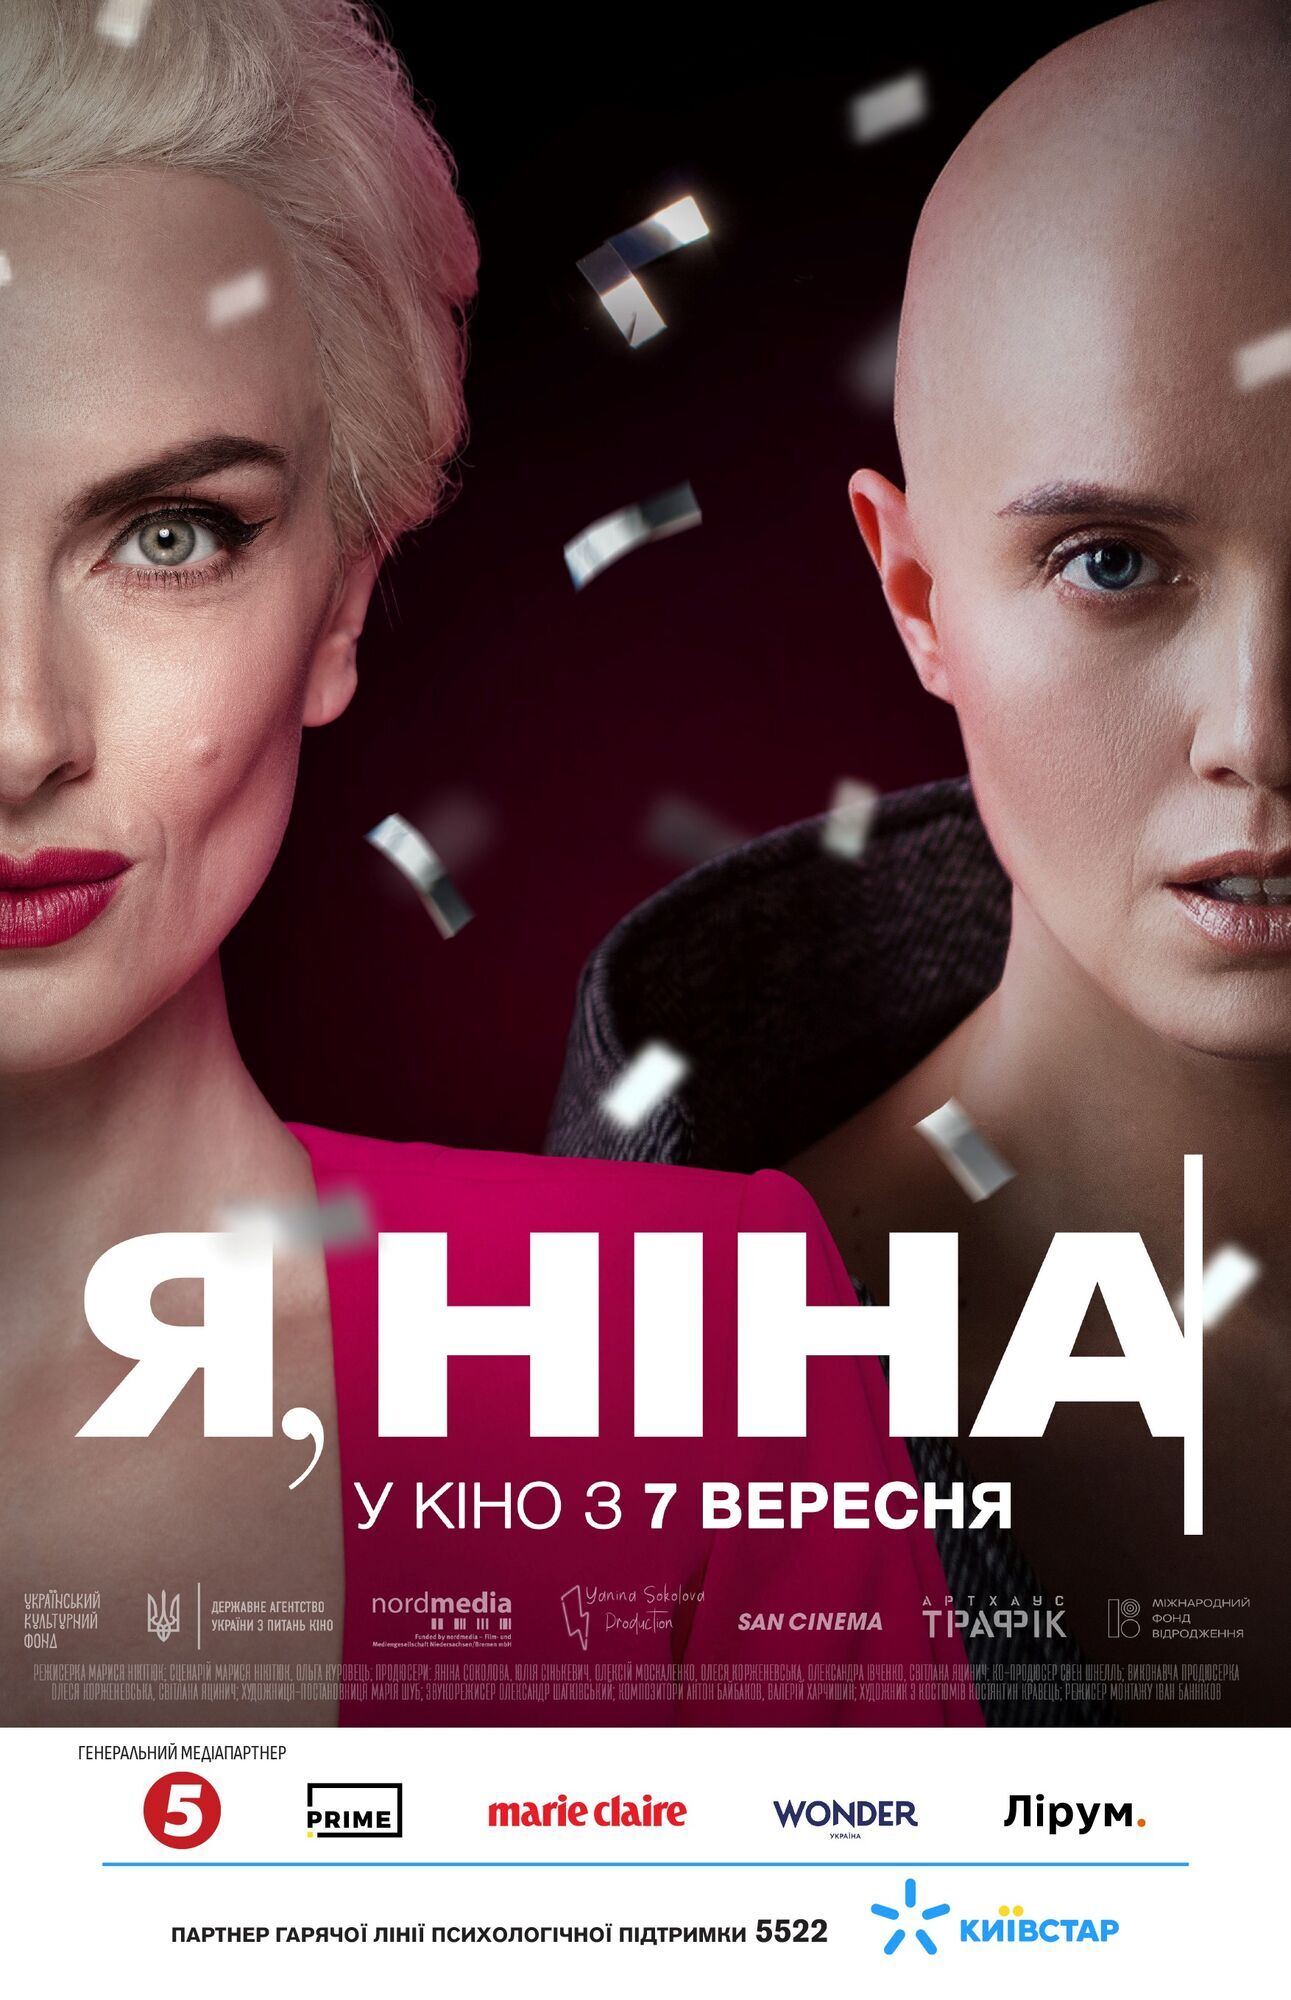  За мотивами особистої історії Яніни Соколової: фільм "Я, Ніна" вийде в кінотеатрах восени